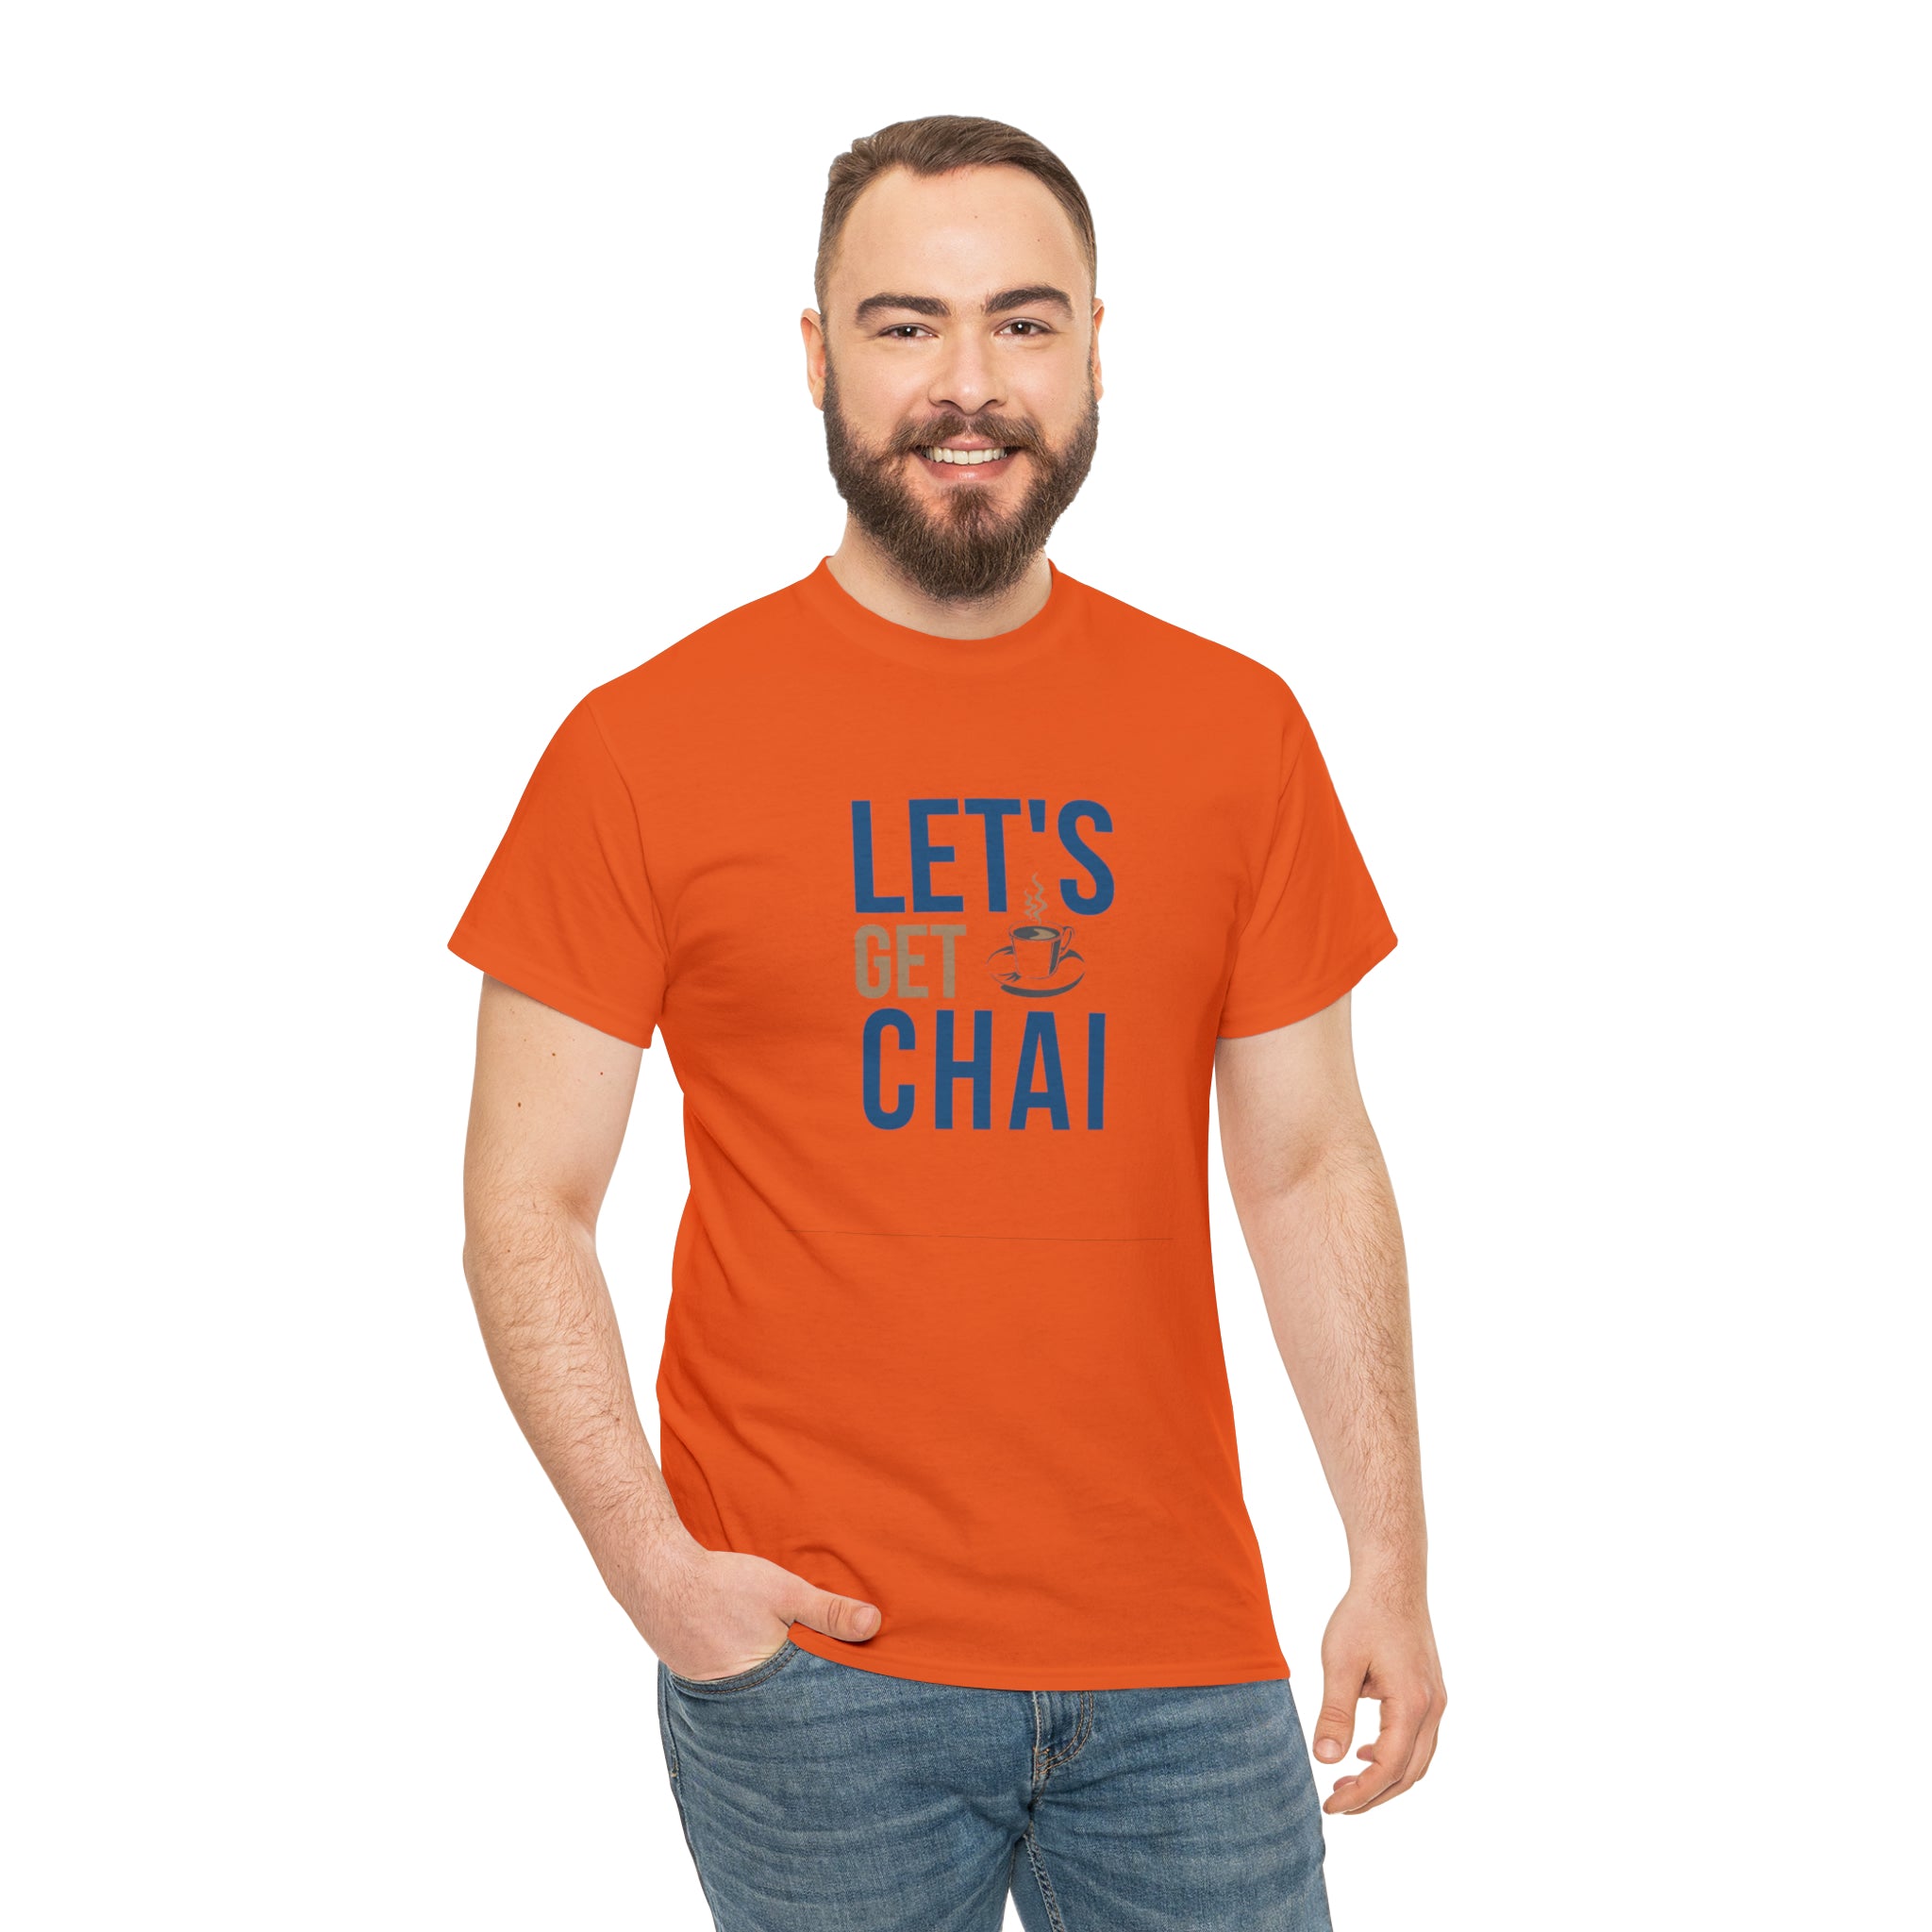 Let's Get Chai!